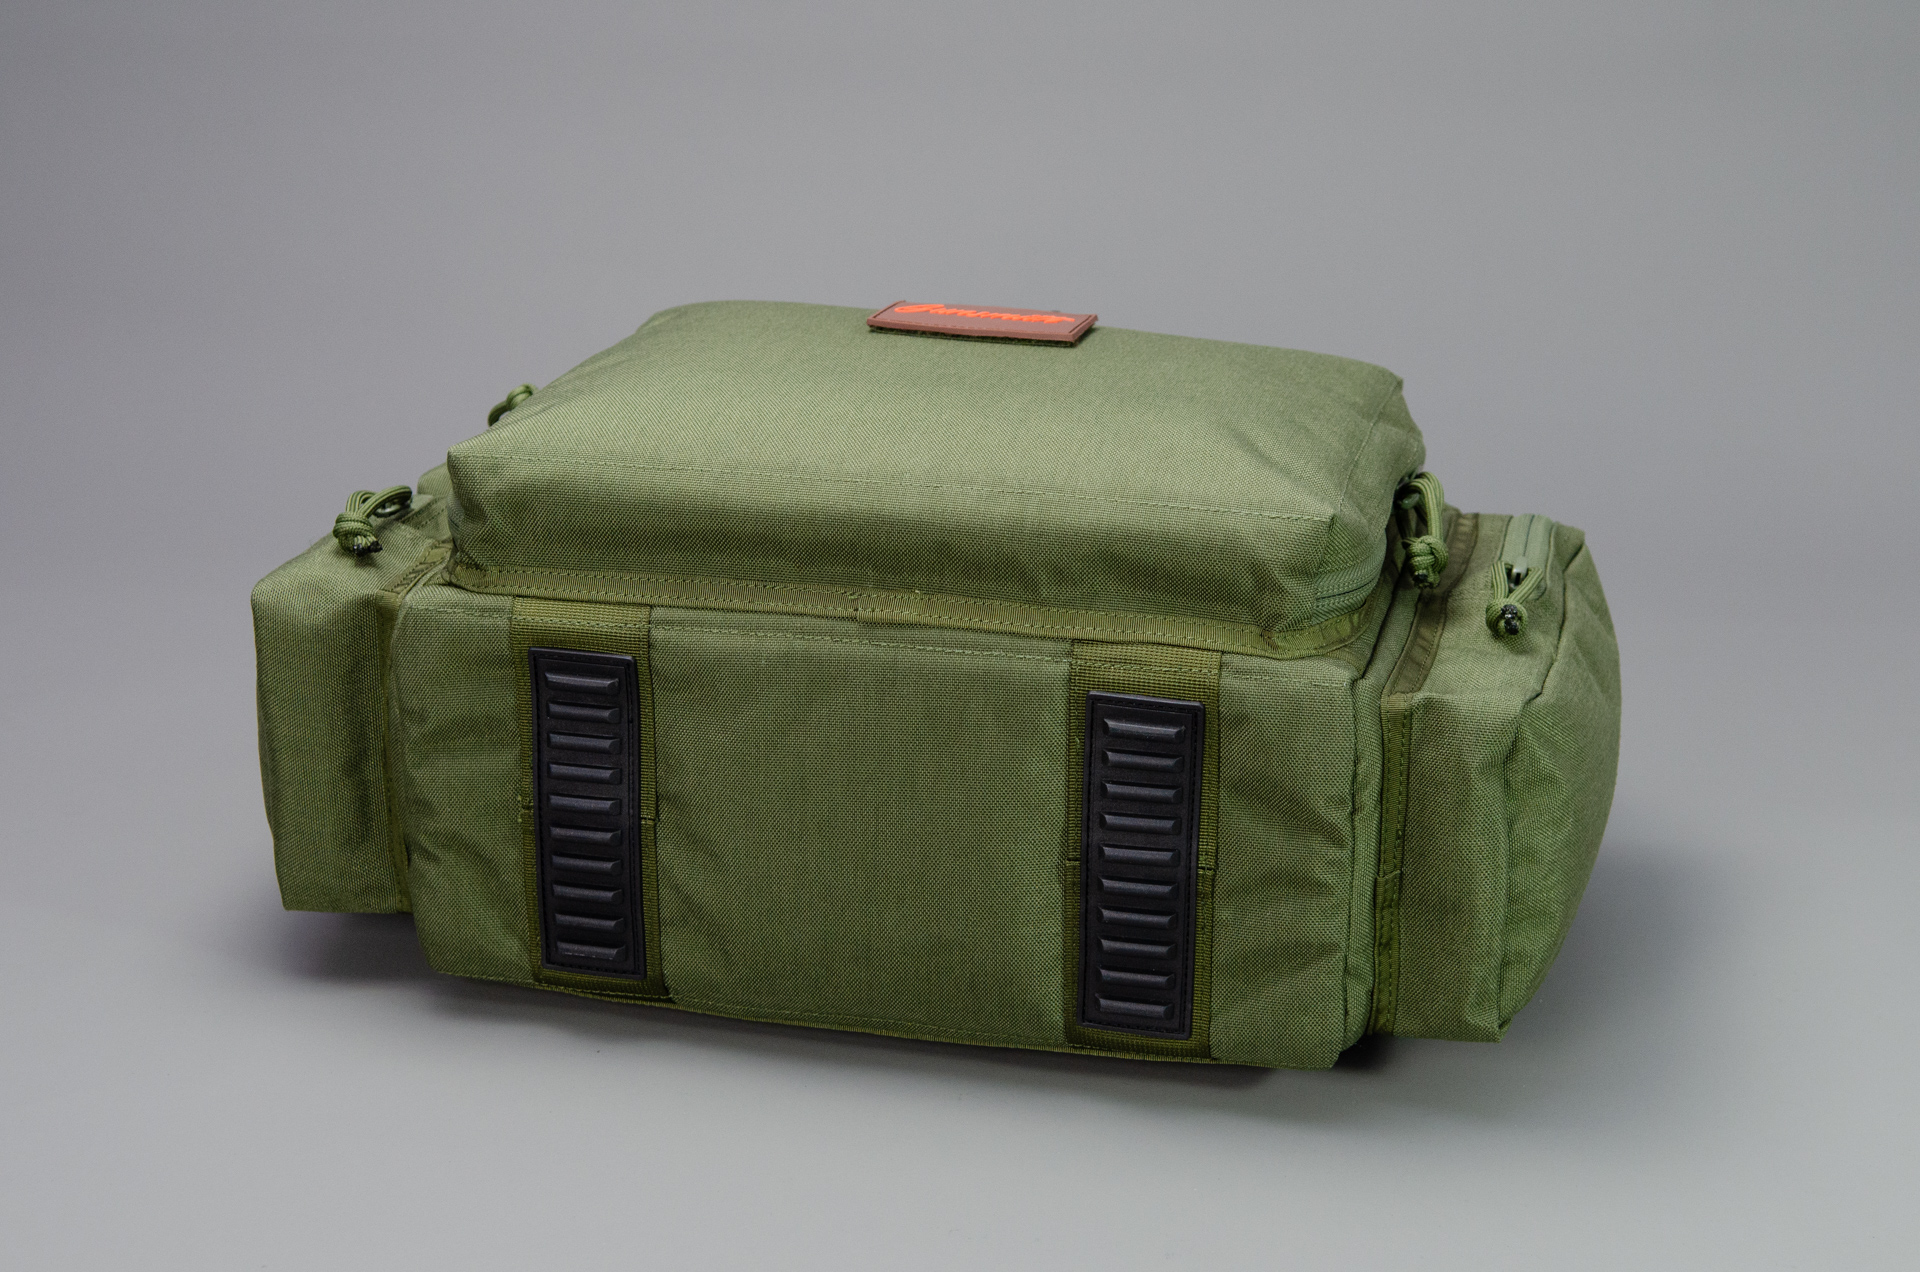 Range Bag für Kurzwaffen / Pistolentasche